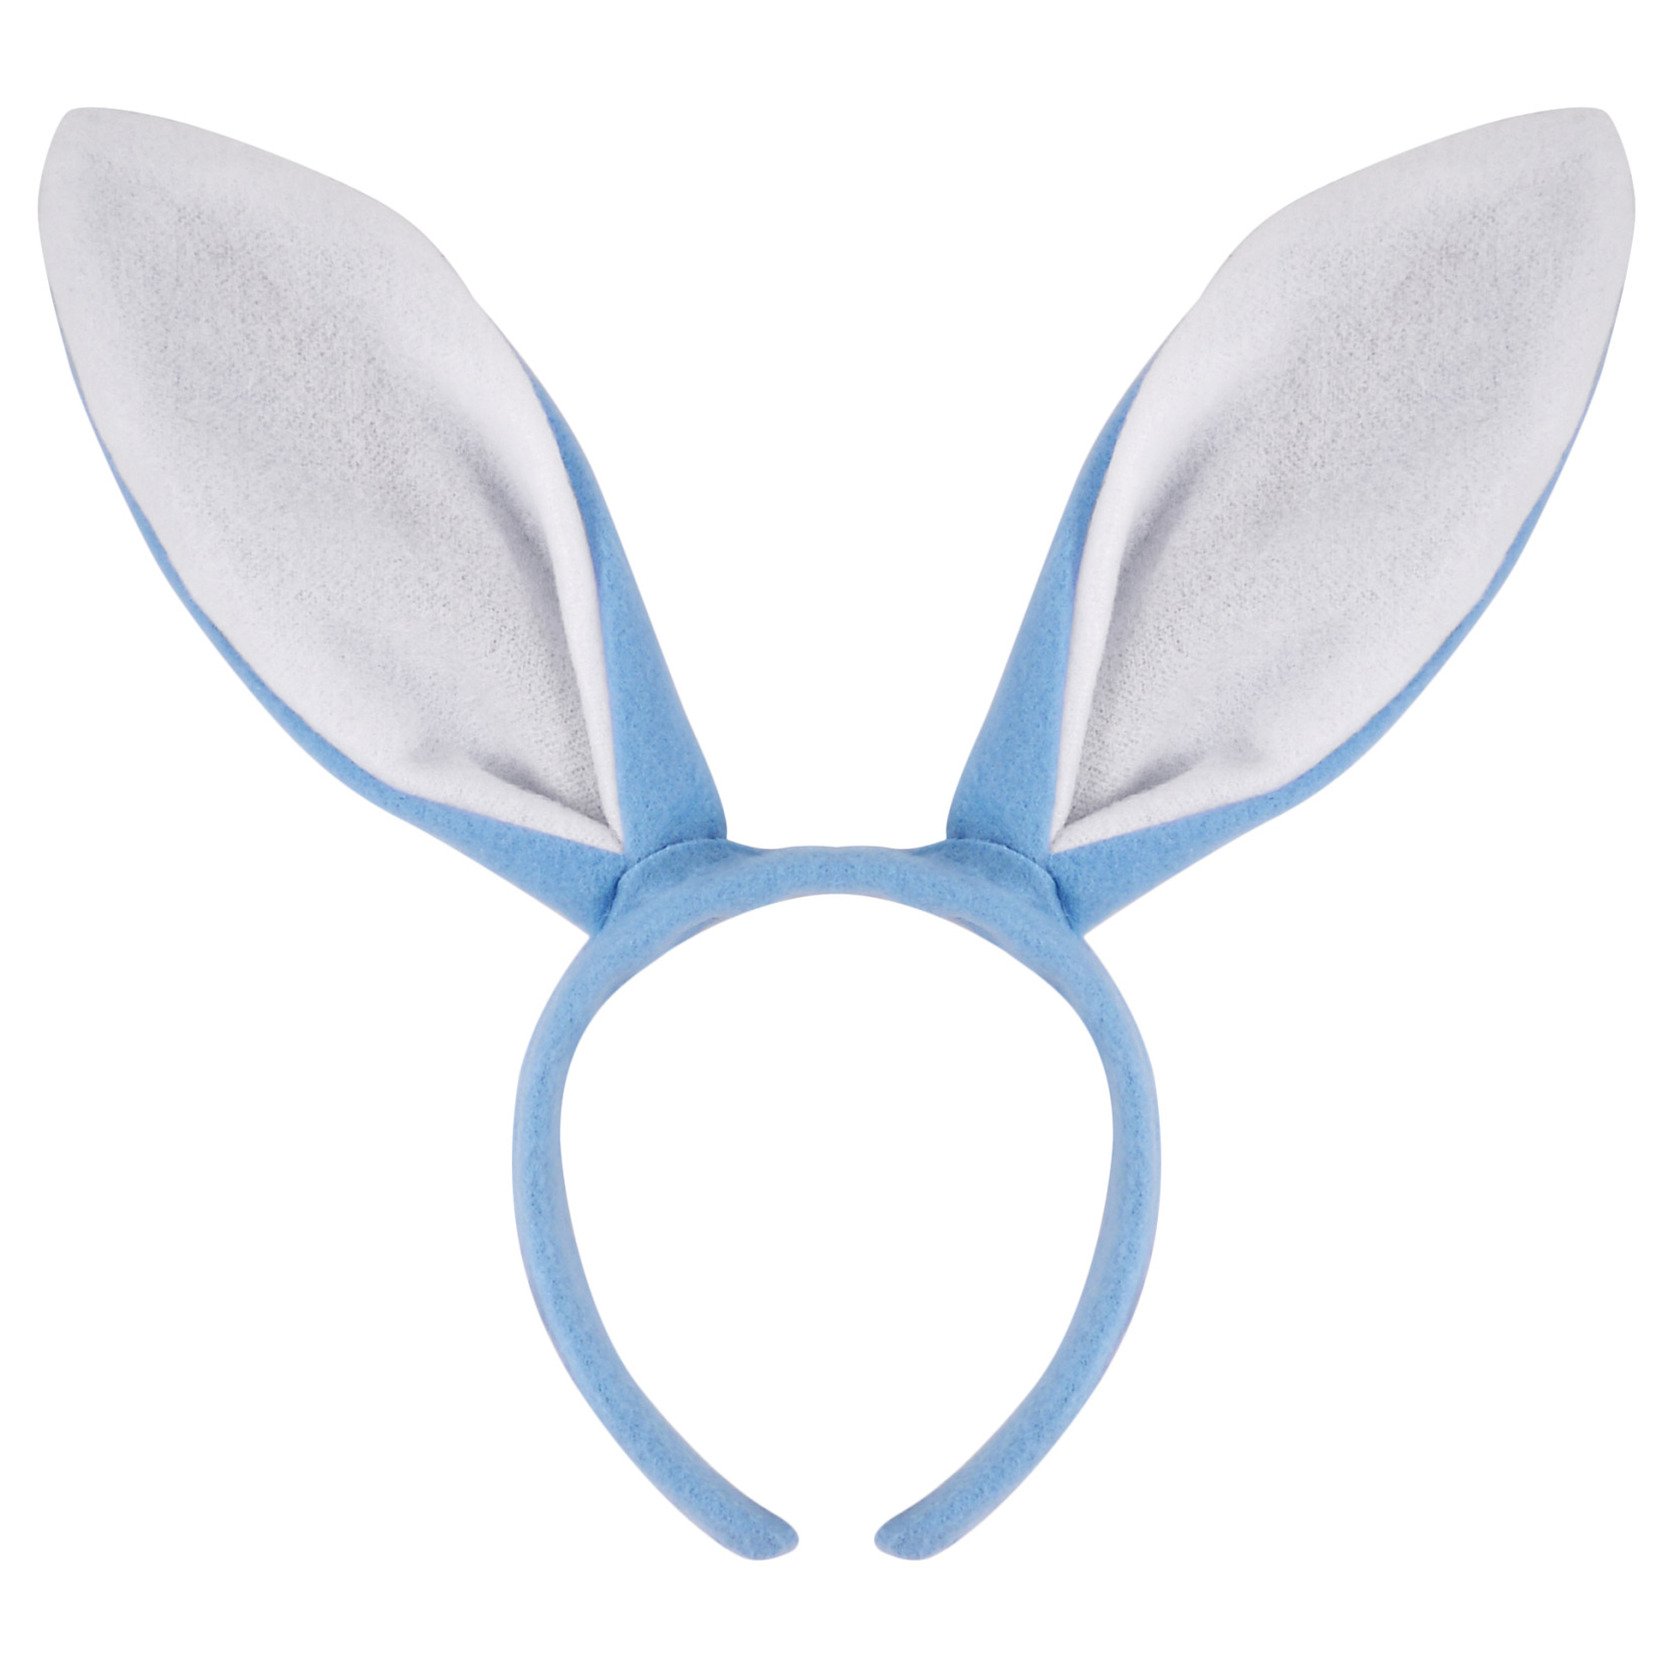 Konijnen/bunny oren licht blauw met wit voor volwassenen 27 x 28 cm